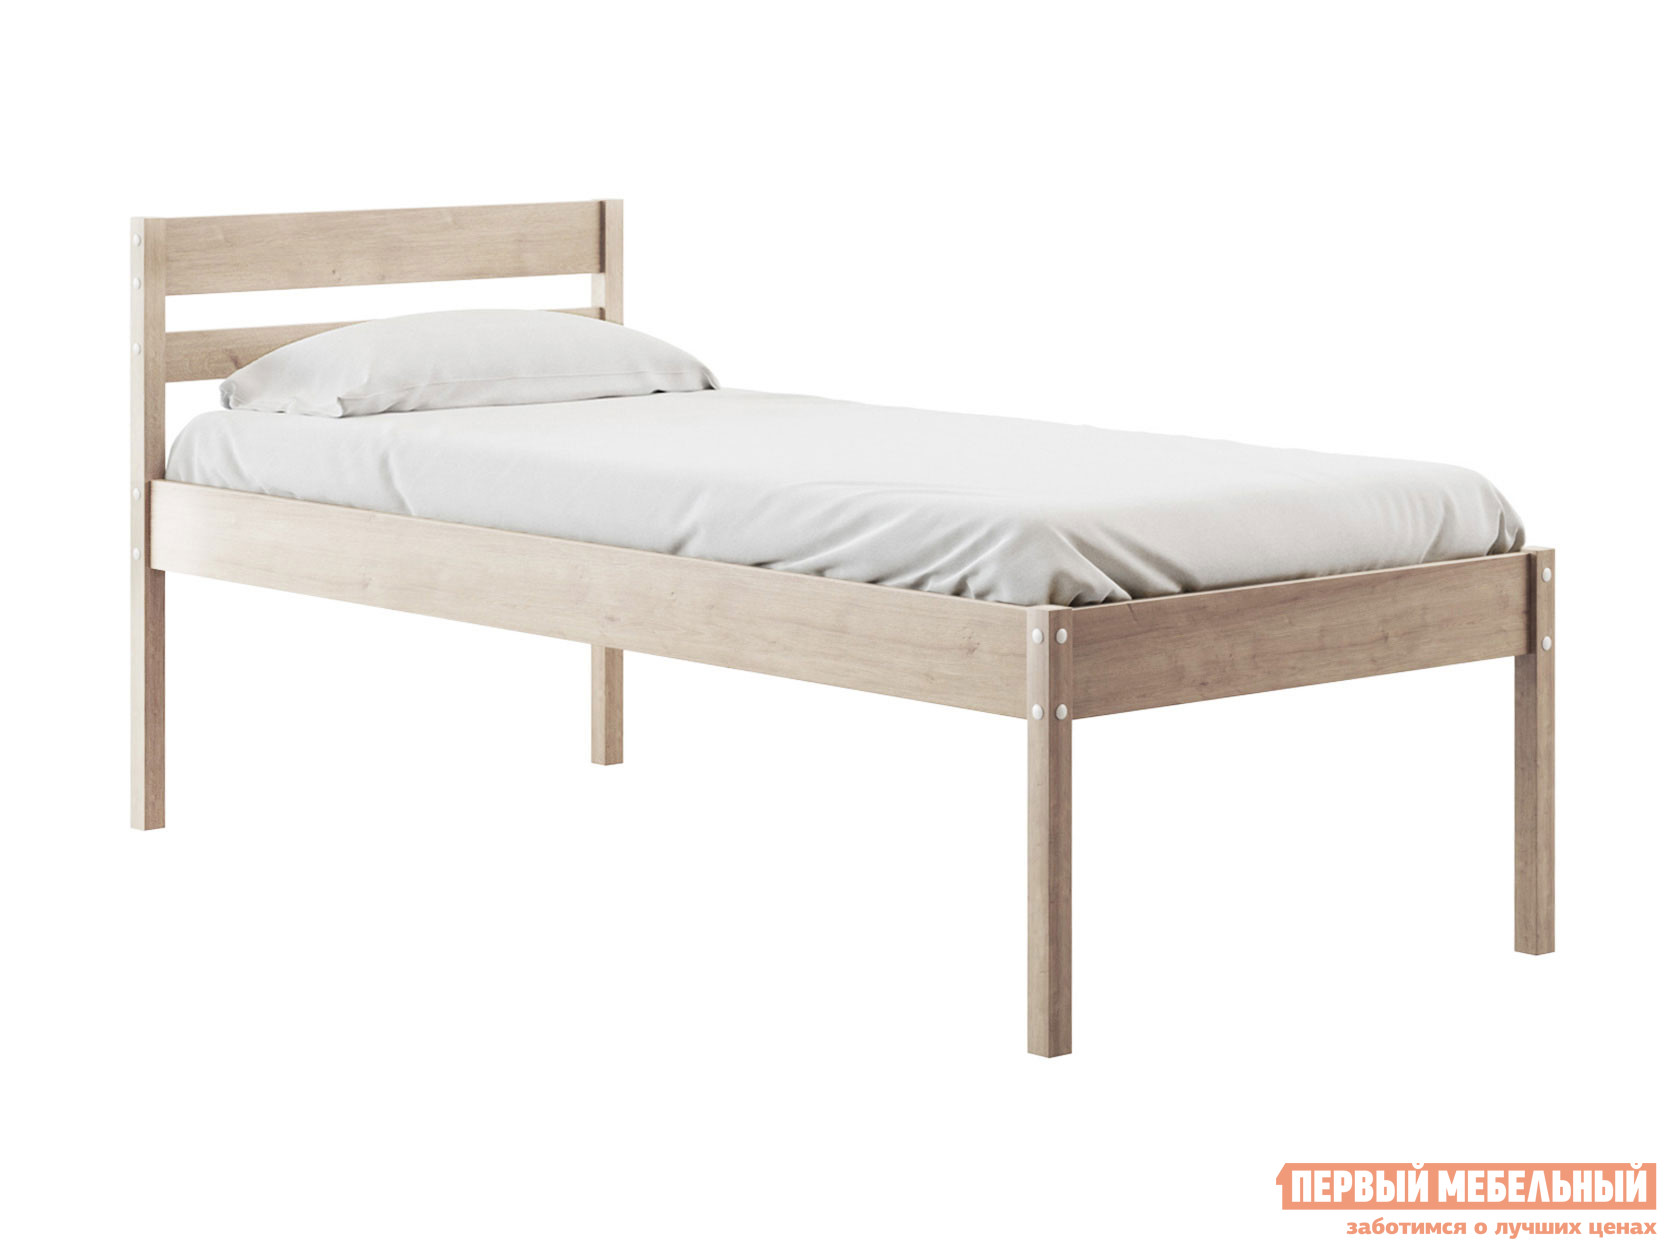 Двуспальная кровать  Эко массив березы Натуральный, 90х200 см, 41 см